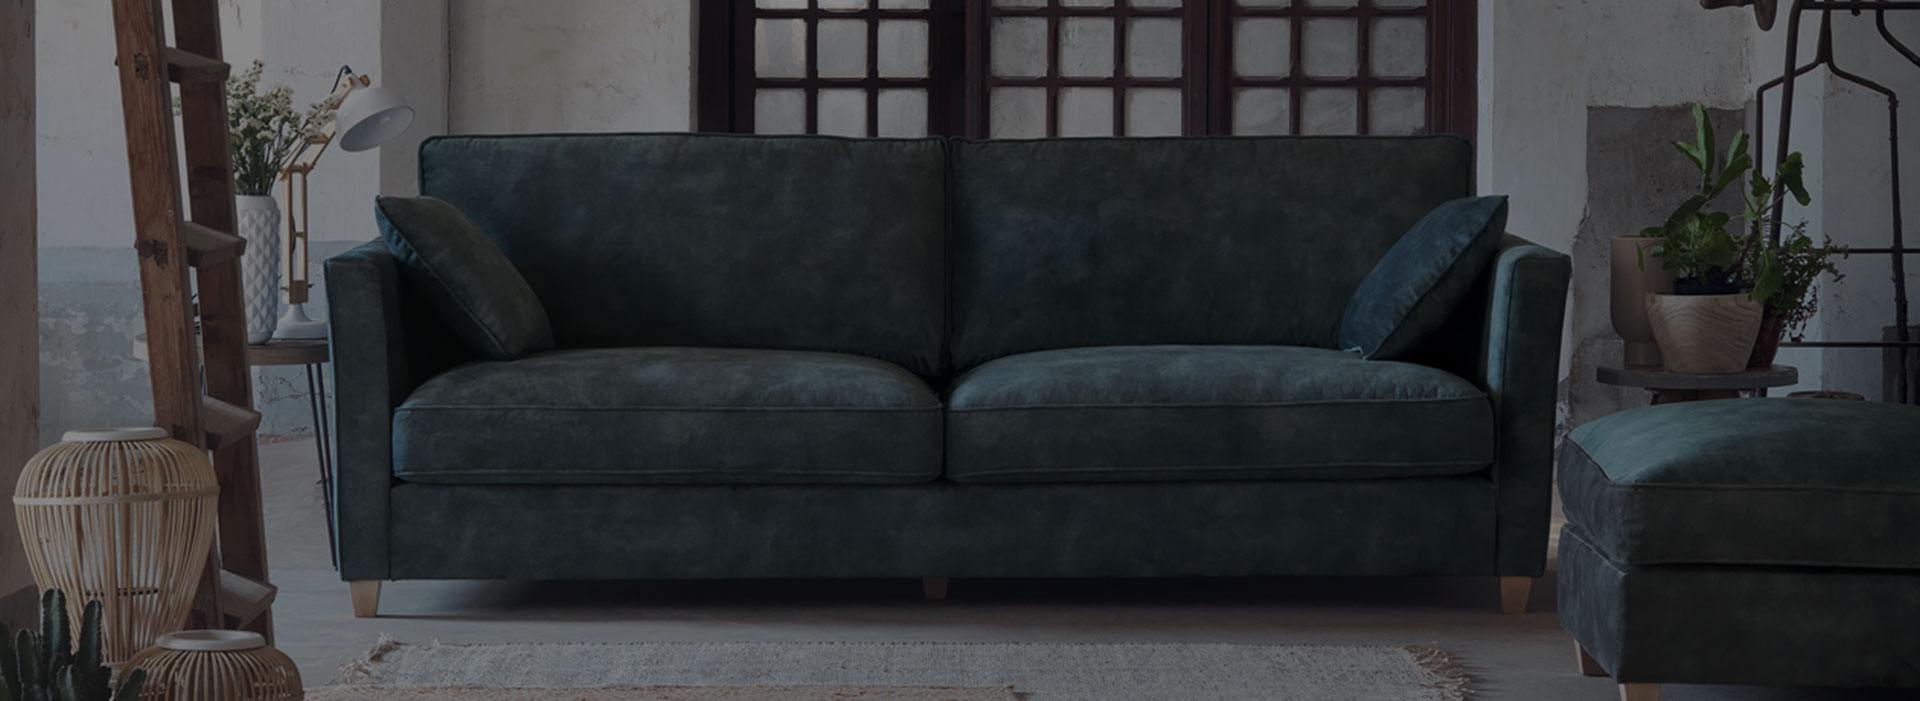 Rehausser un canapé : 4 astuces rapides et faciles